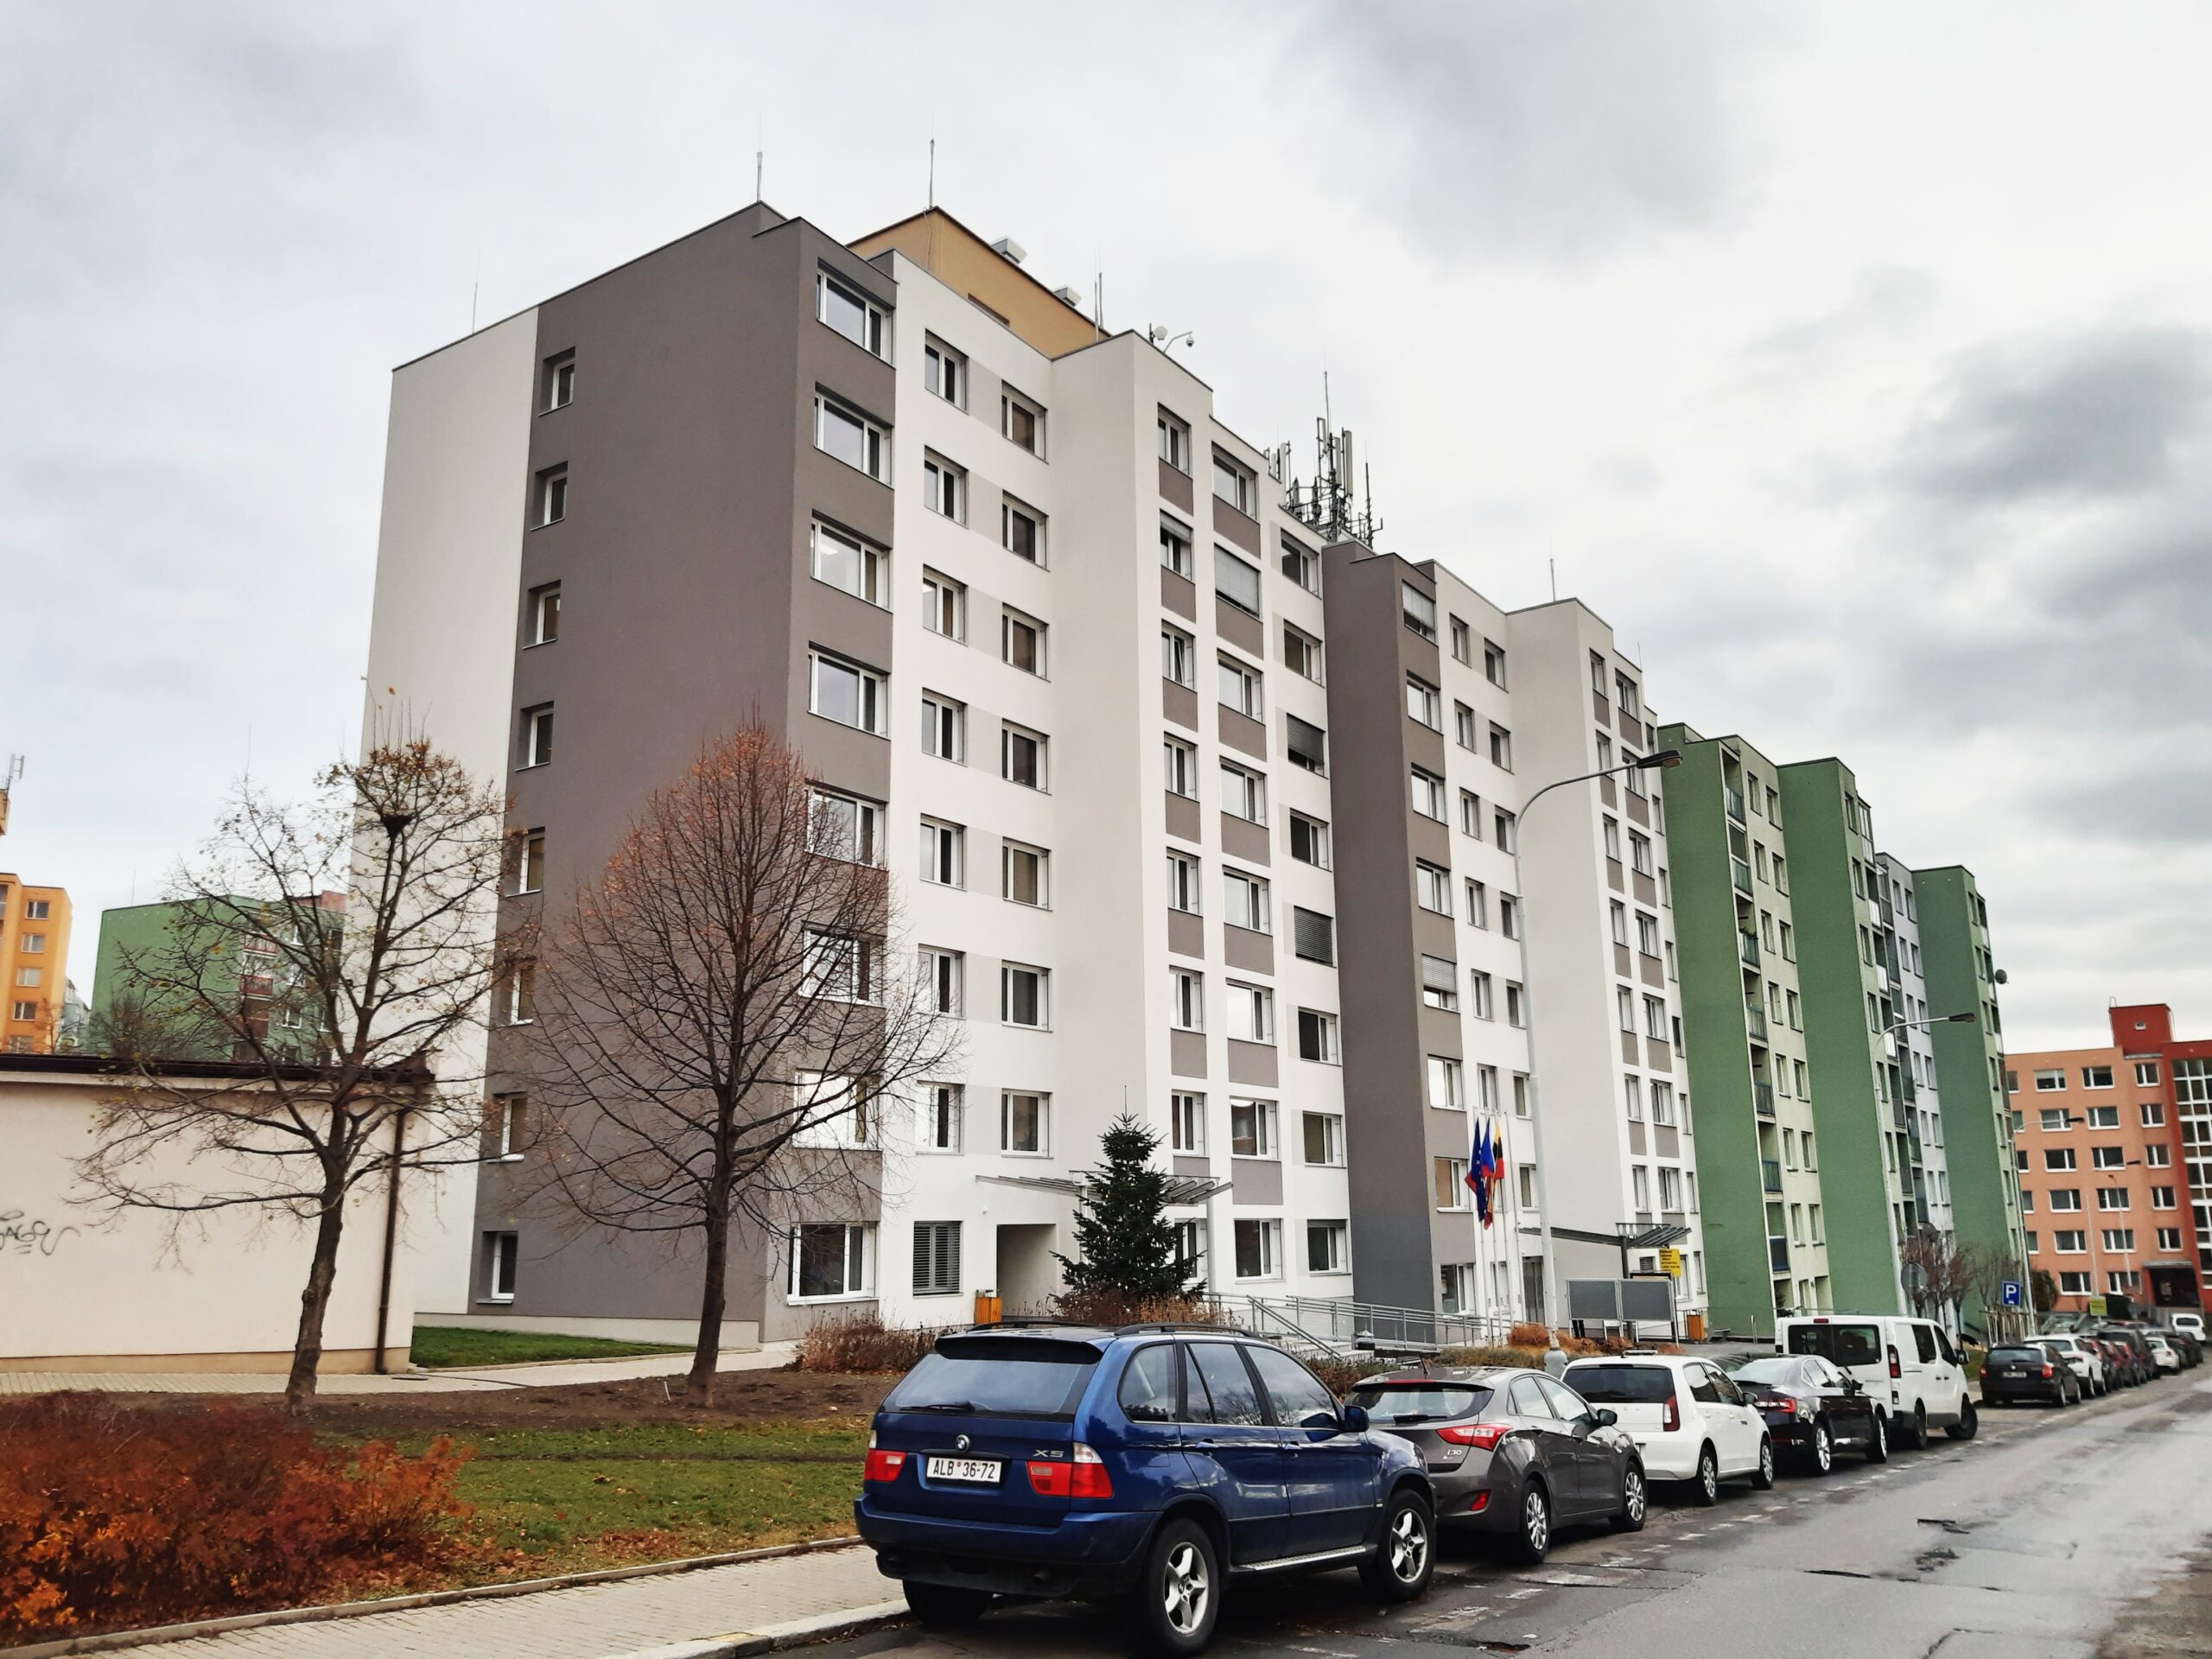 Budova radnice v ulici Bratří Venclíků po rekonstrukci v letech 2020 až 2021